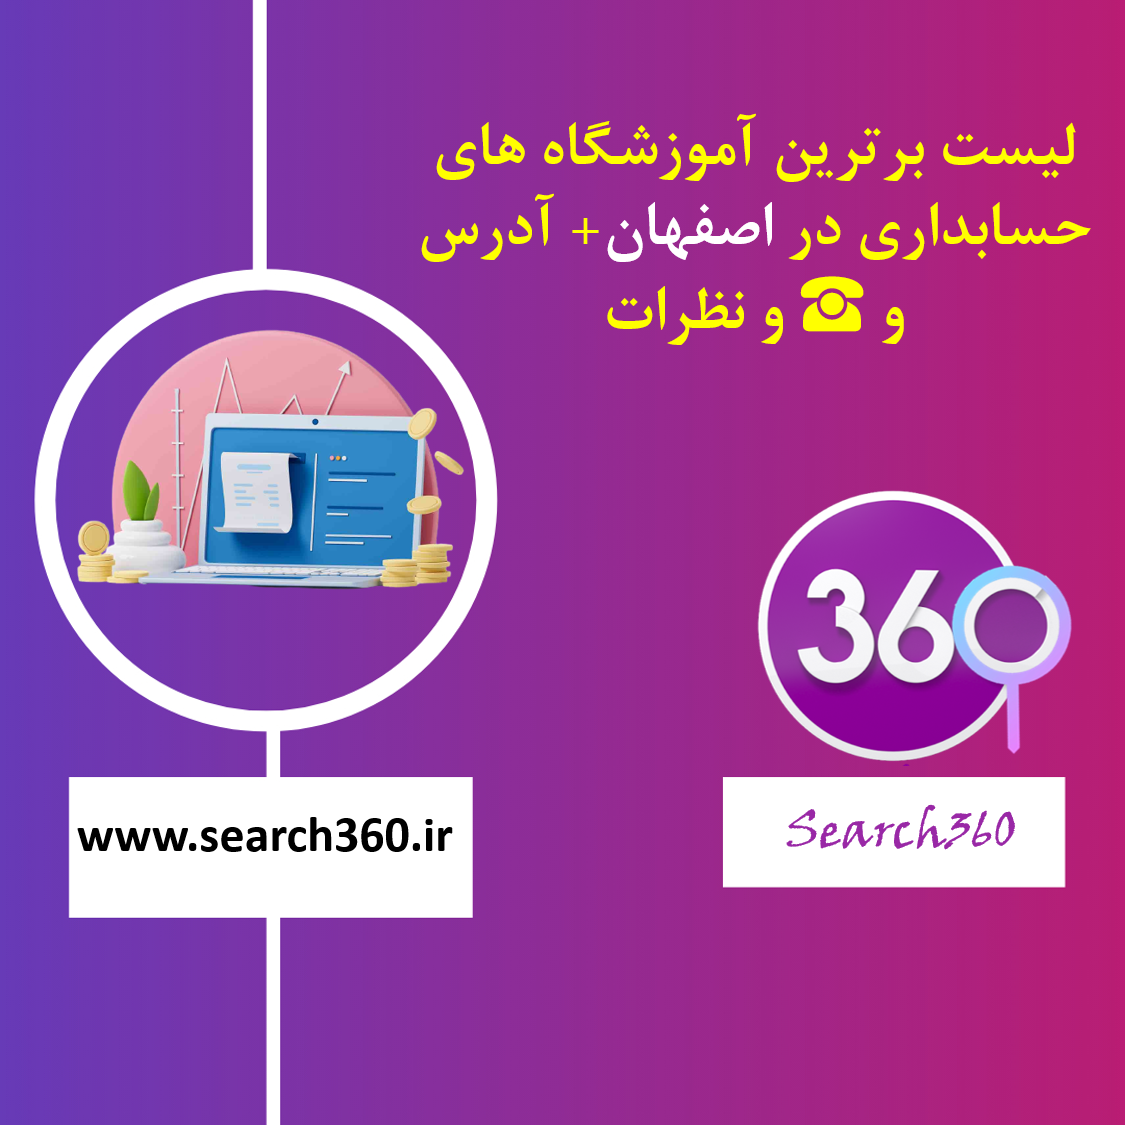 لیست برترین آموزشگاه های حسابداری در اصفهان با آدرس و تلفن ☎️ و نظرات